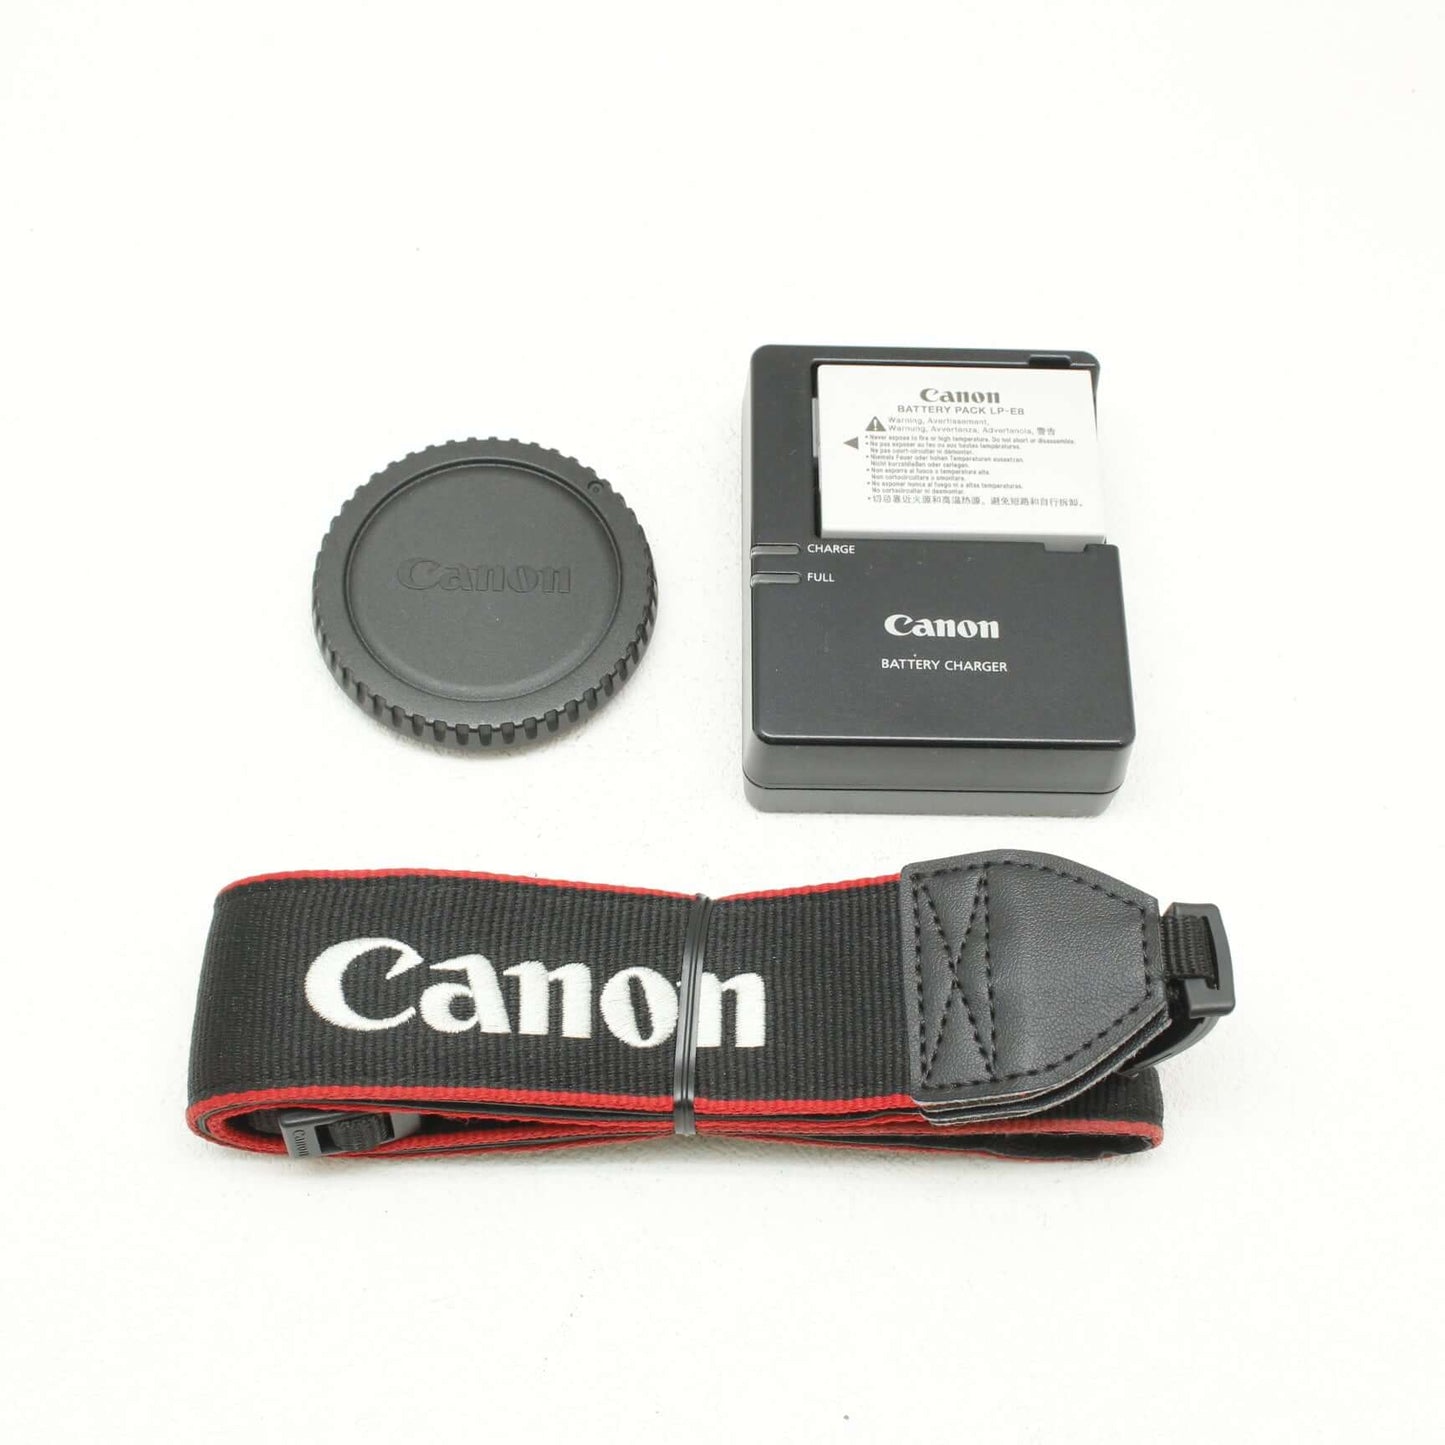 中古品 Canon EOS Kiss X7i ボディ